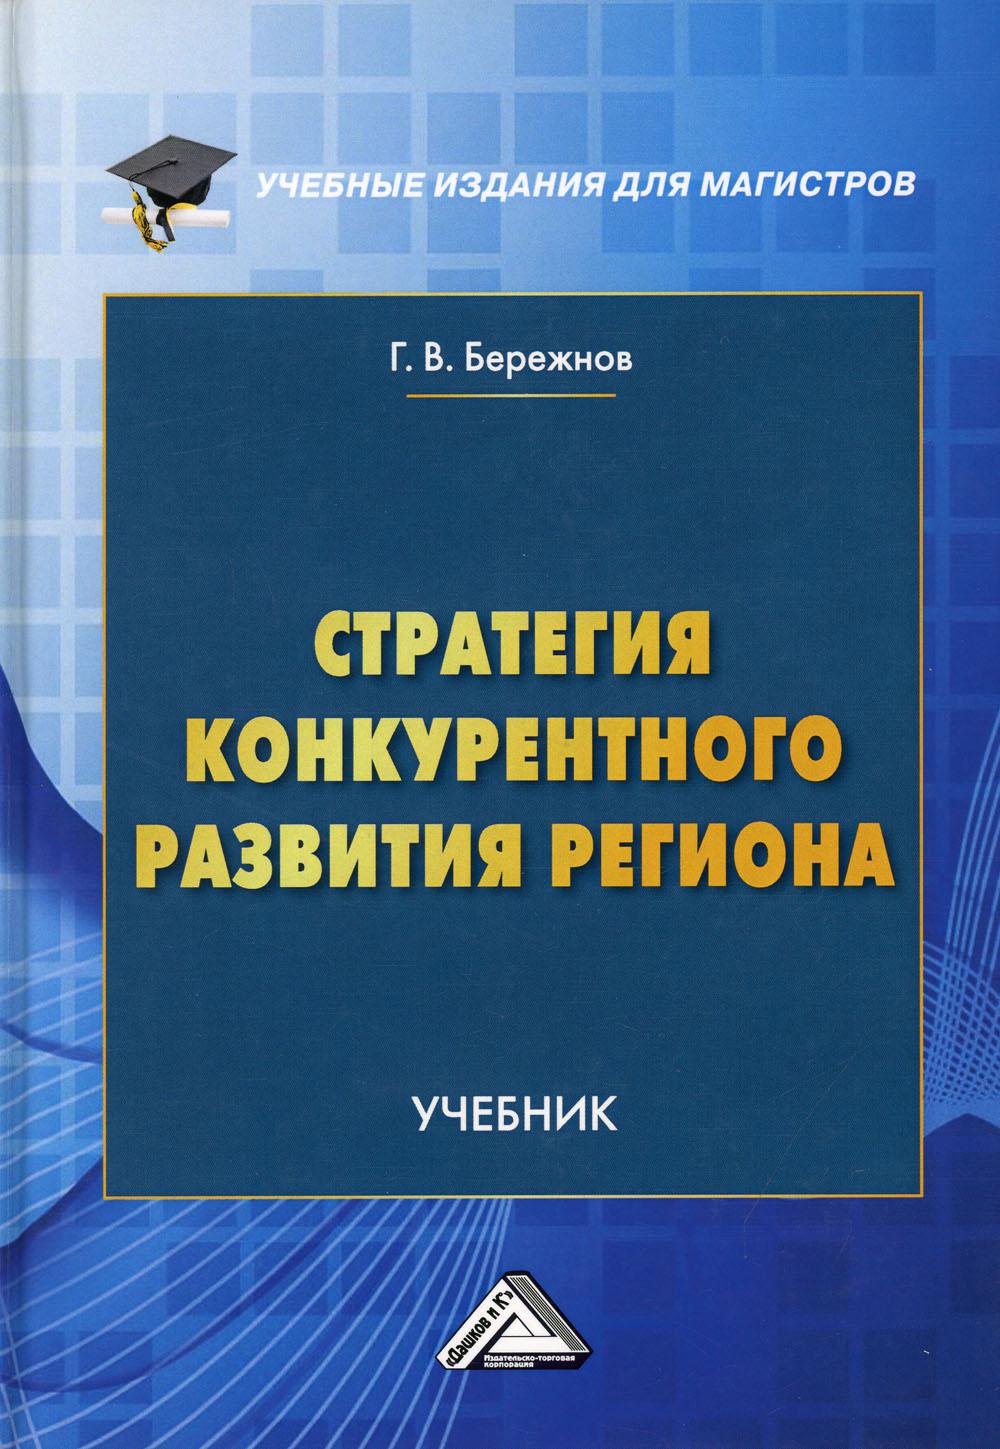 фото Книга стратегия конкурентного развития региона 3-е изд. дашков и к